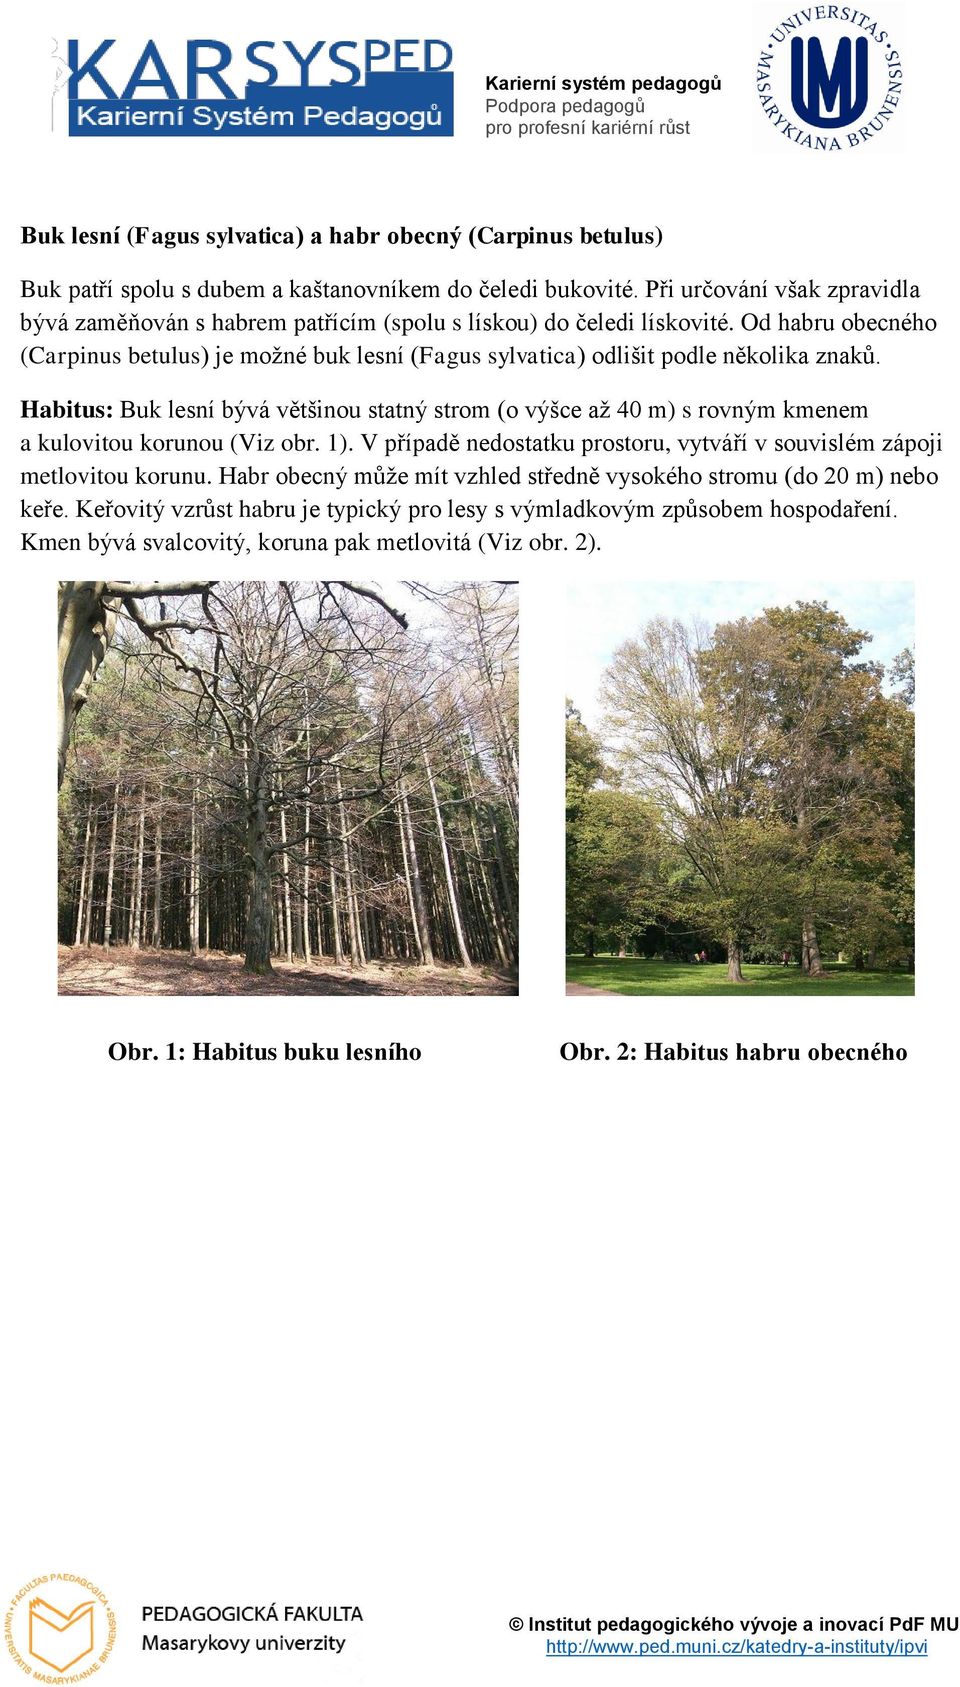 Od habru obecného (Carpinus betulus) je možné buk lesní (Fagus sylvatica) odlišit podle několika znaků.